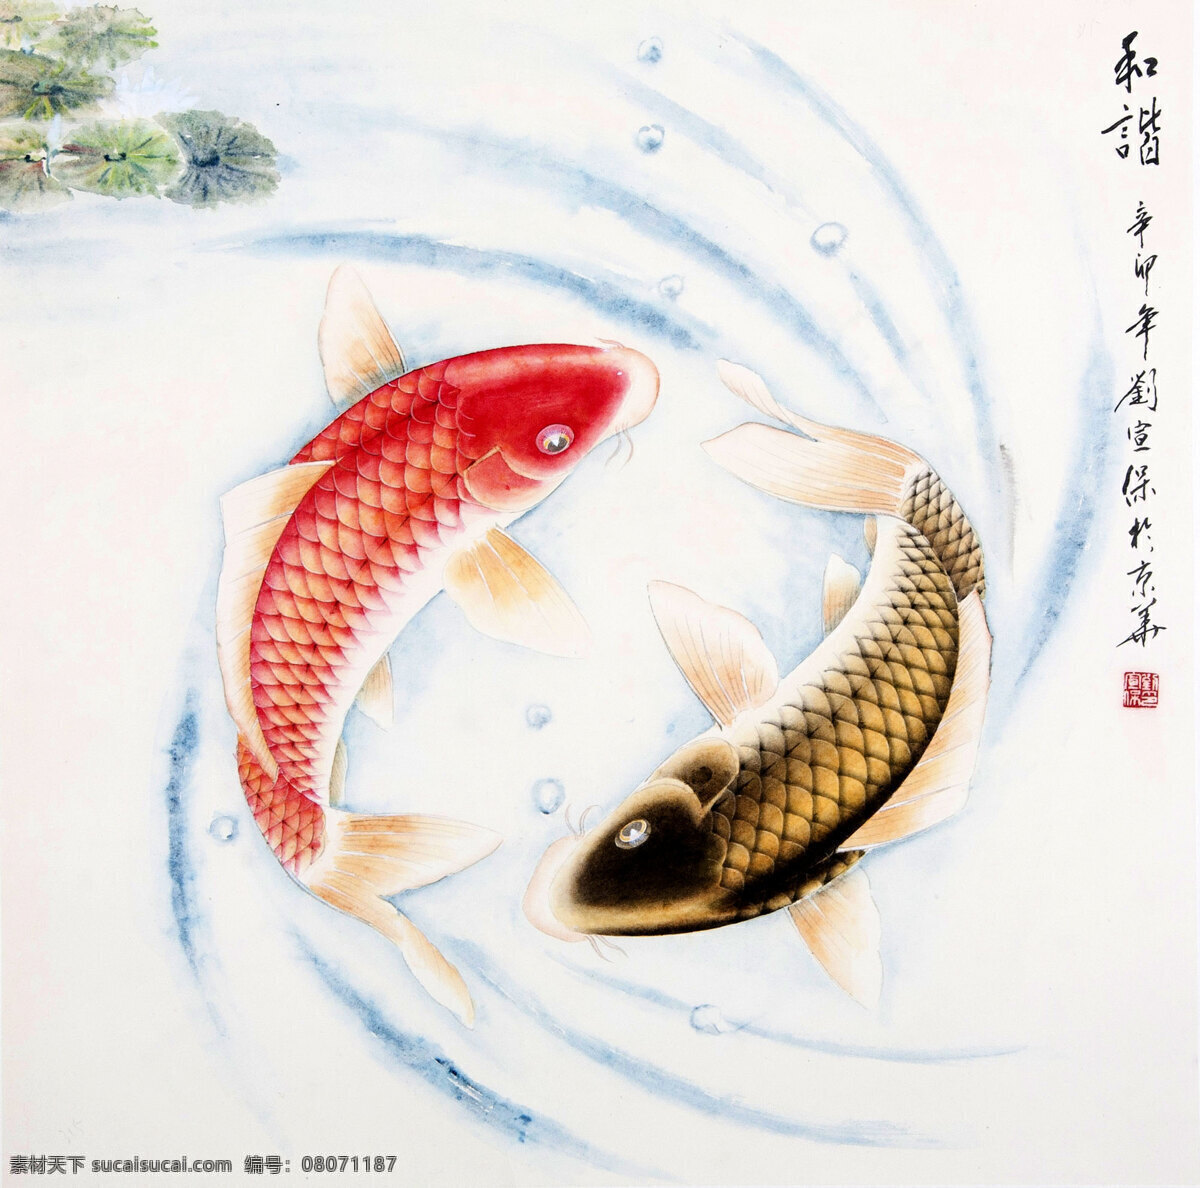 和谐 国画 刘宣保作品 连年有余 两只鲤鱼 游弋 池塘 荷叶 中国古代画 中国古画 绘画书法 文化艺术